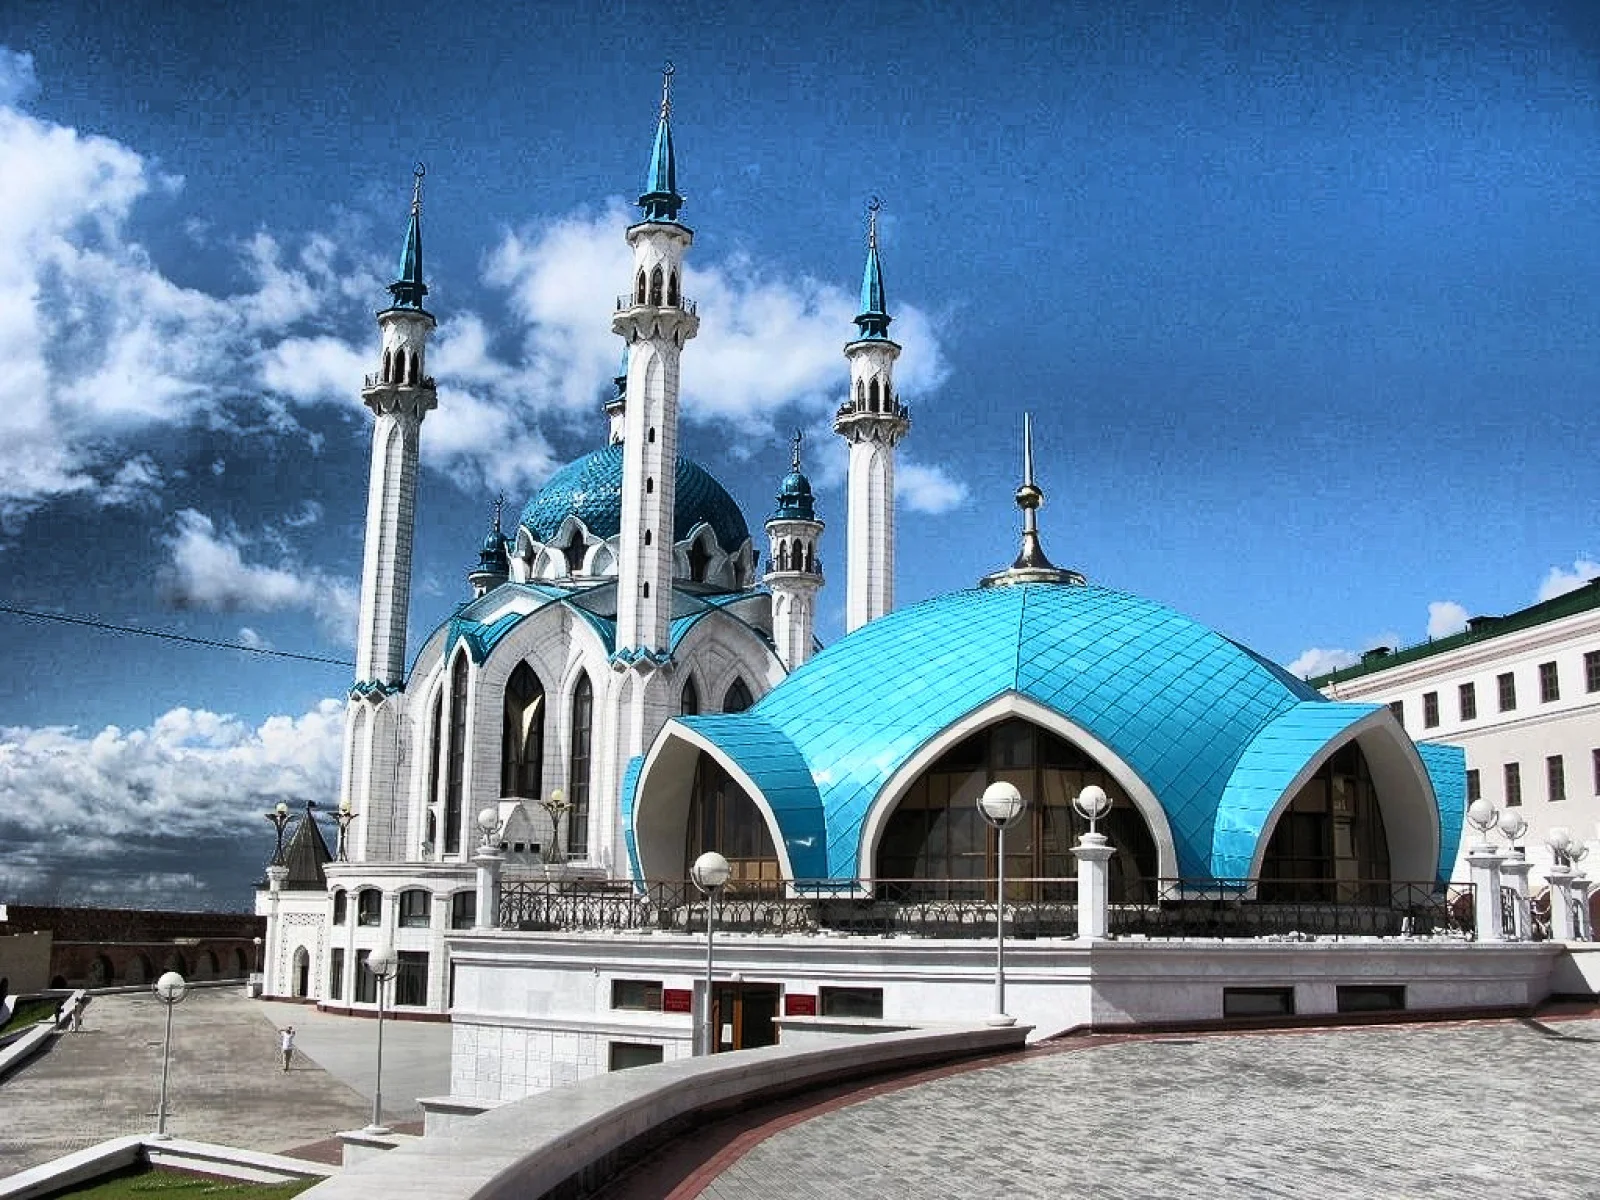 Daftar Wallpaper 3D Masjid  Download Kumpulan Wallpaper Juventus